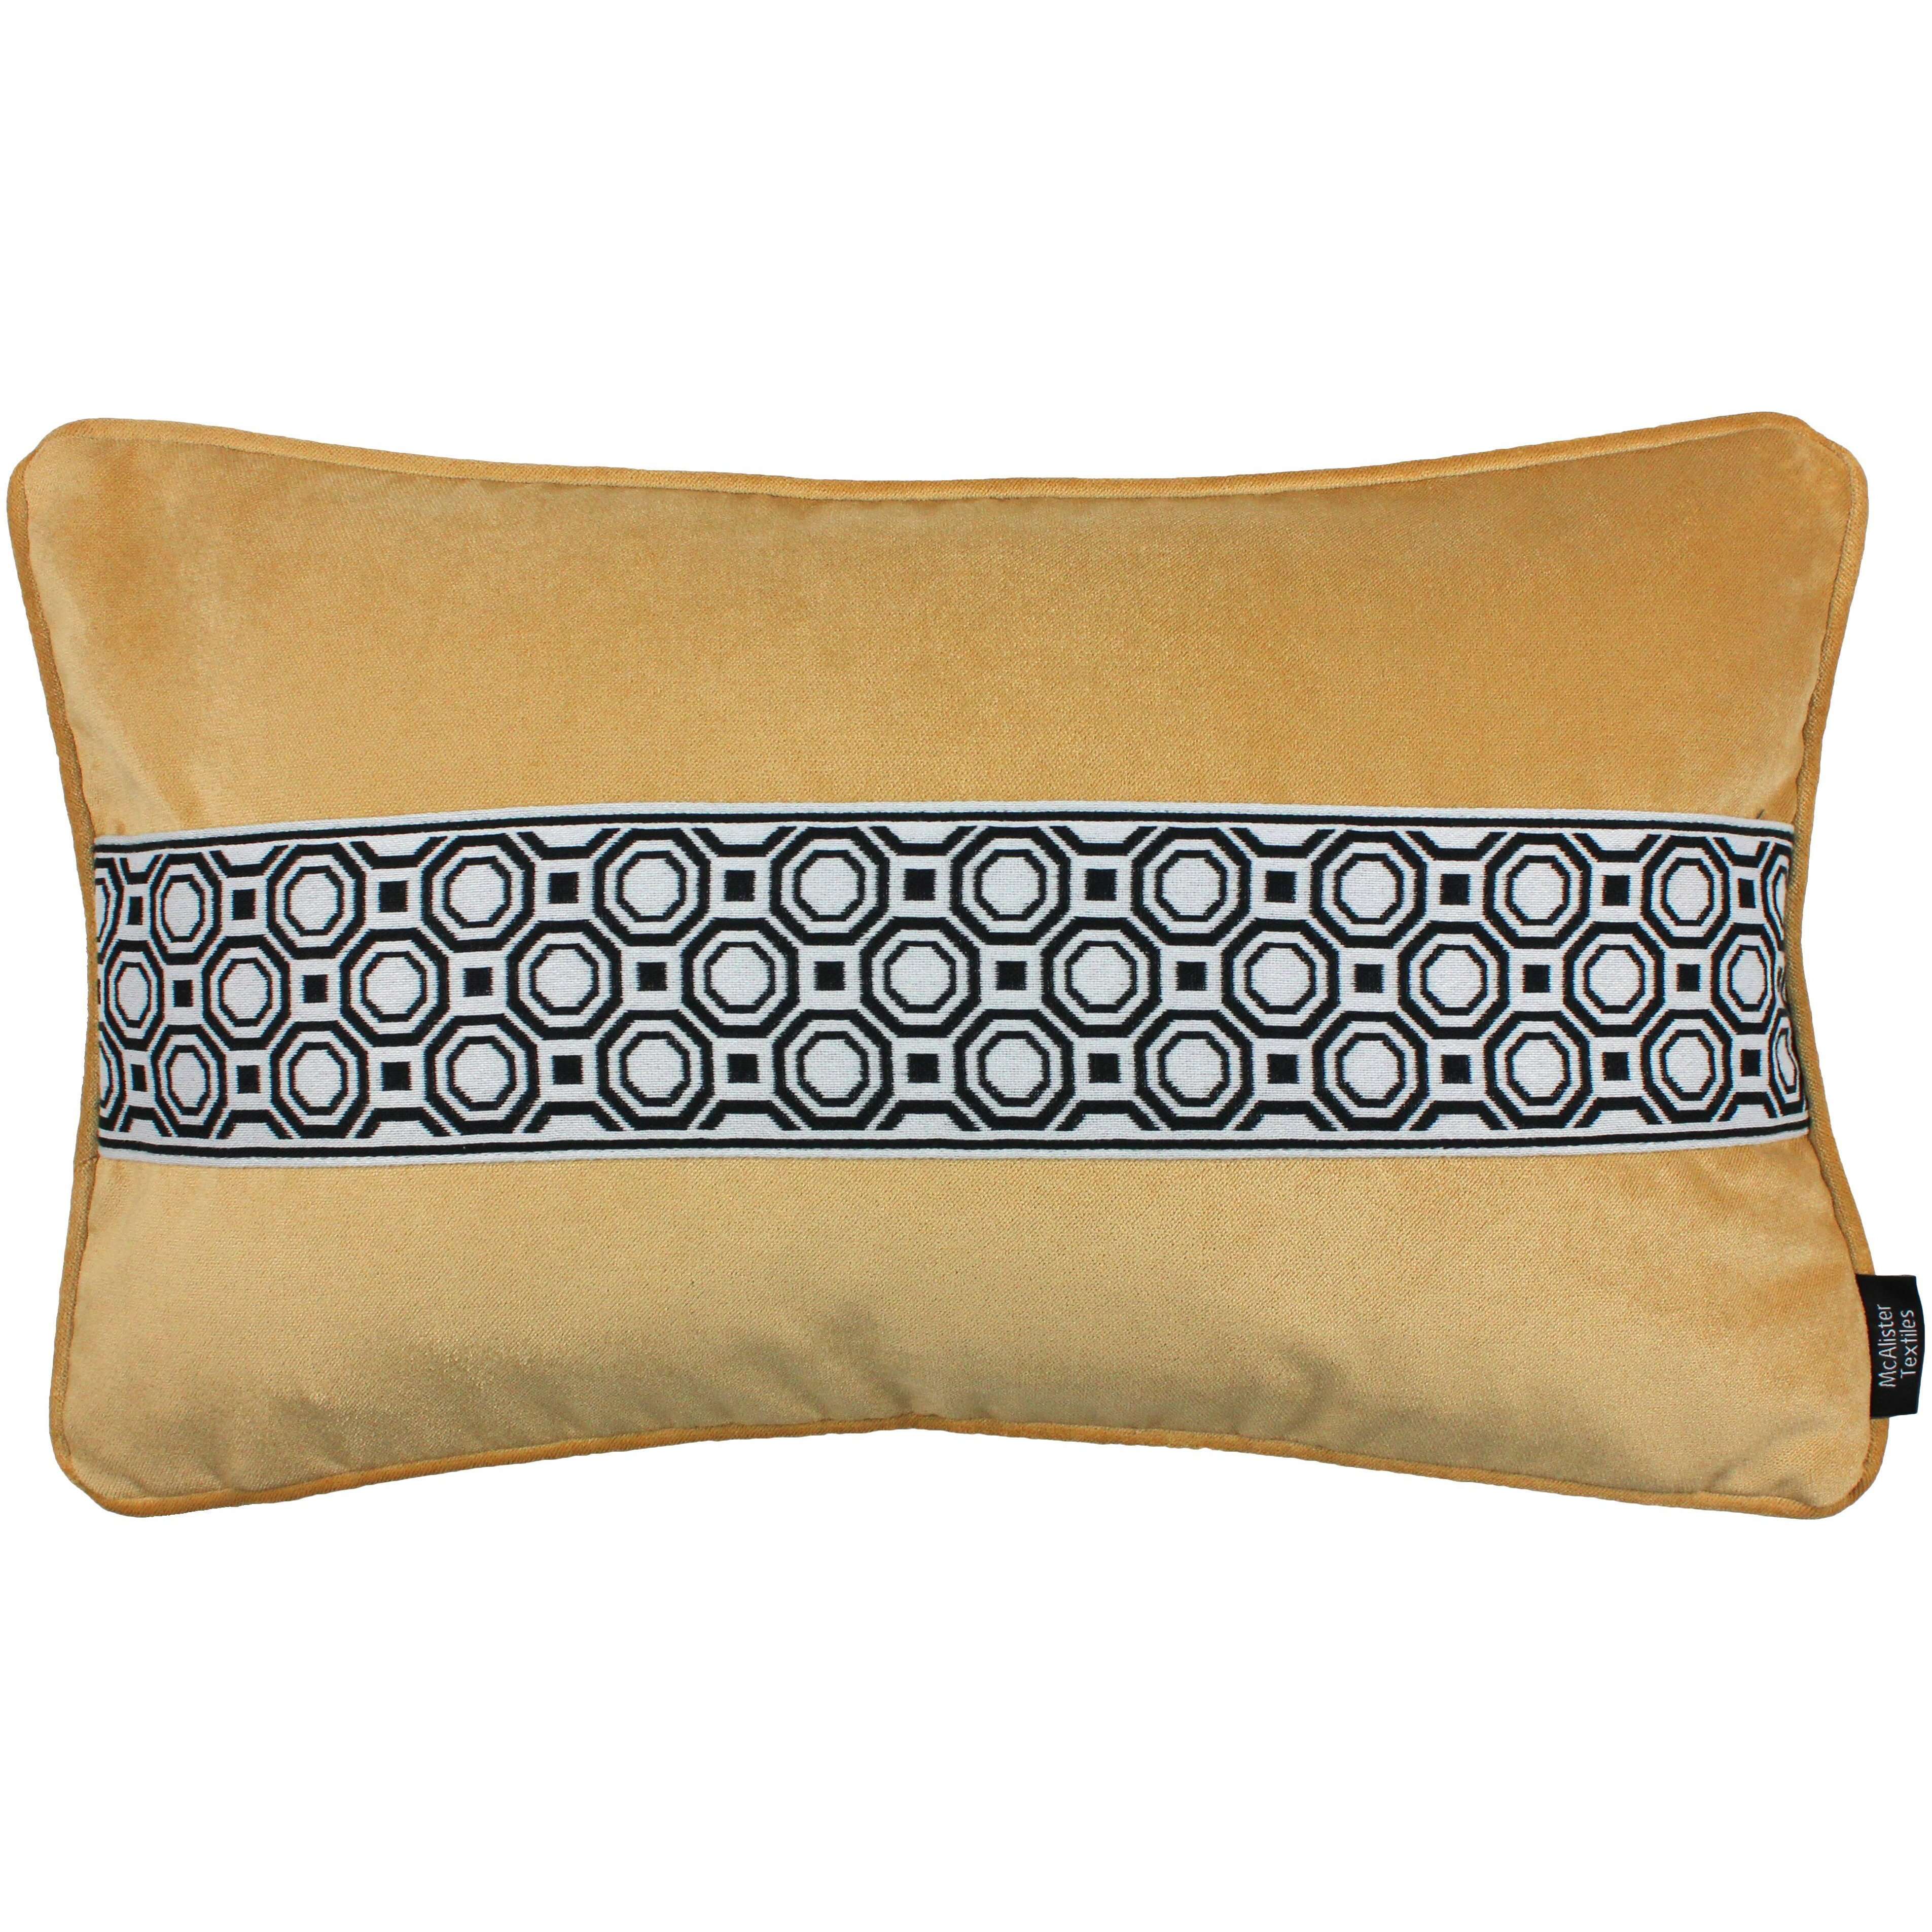 McAlister Textiles Cancun Striped Ochre Yellow Velvet Pillow Pillow Cover Only 50cm x 30cm 